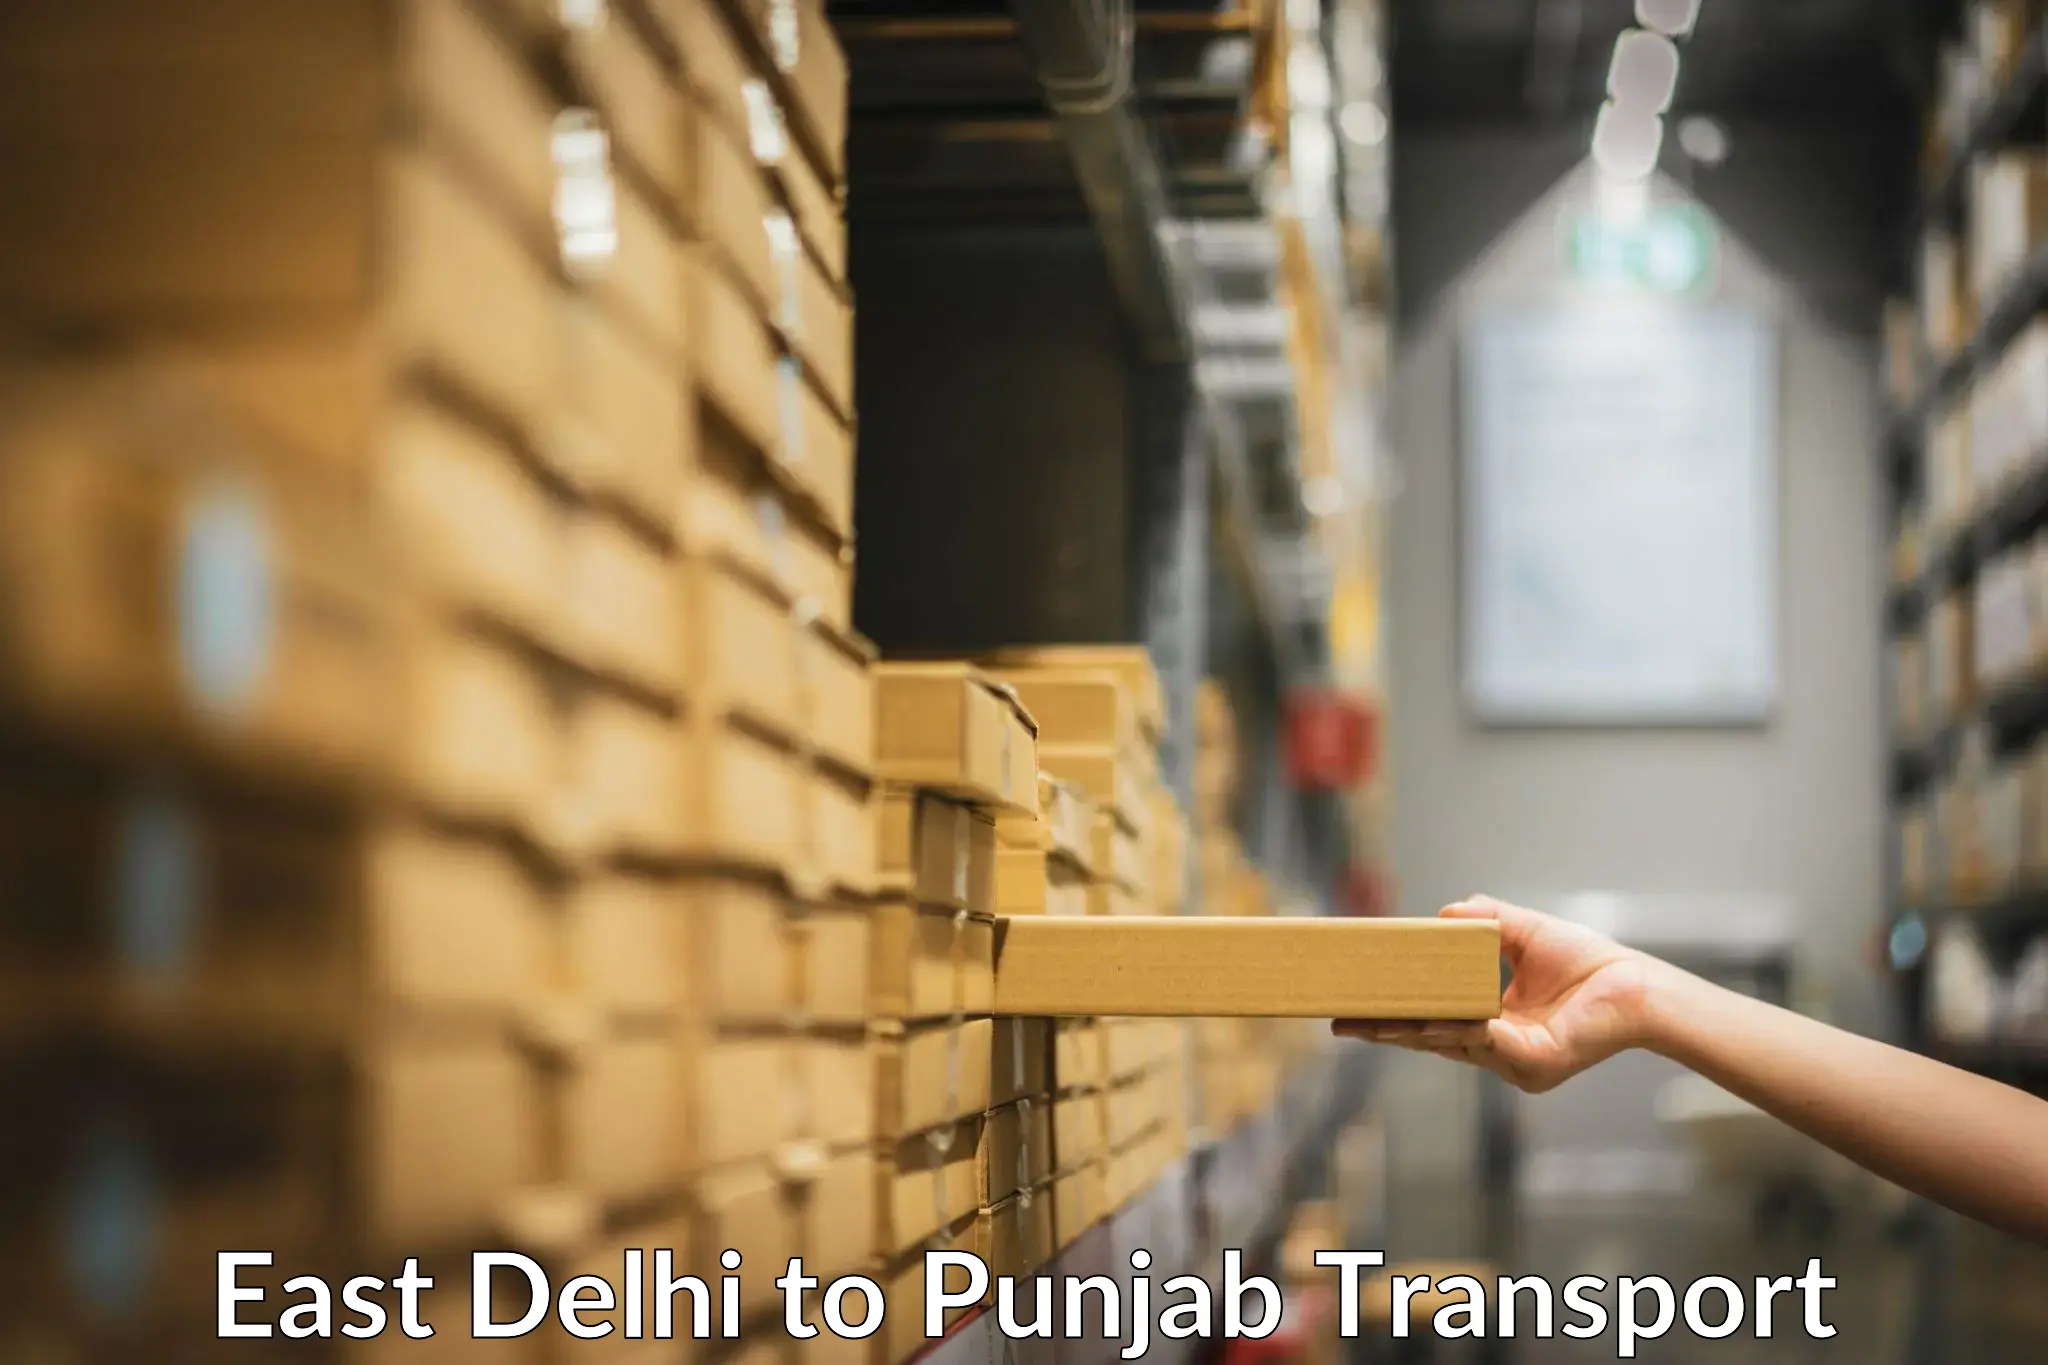 Furniture transport service East Delhi to Begowal